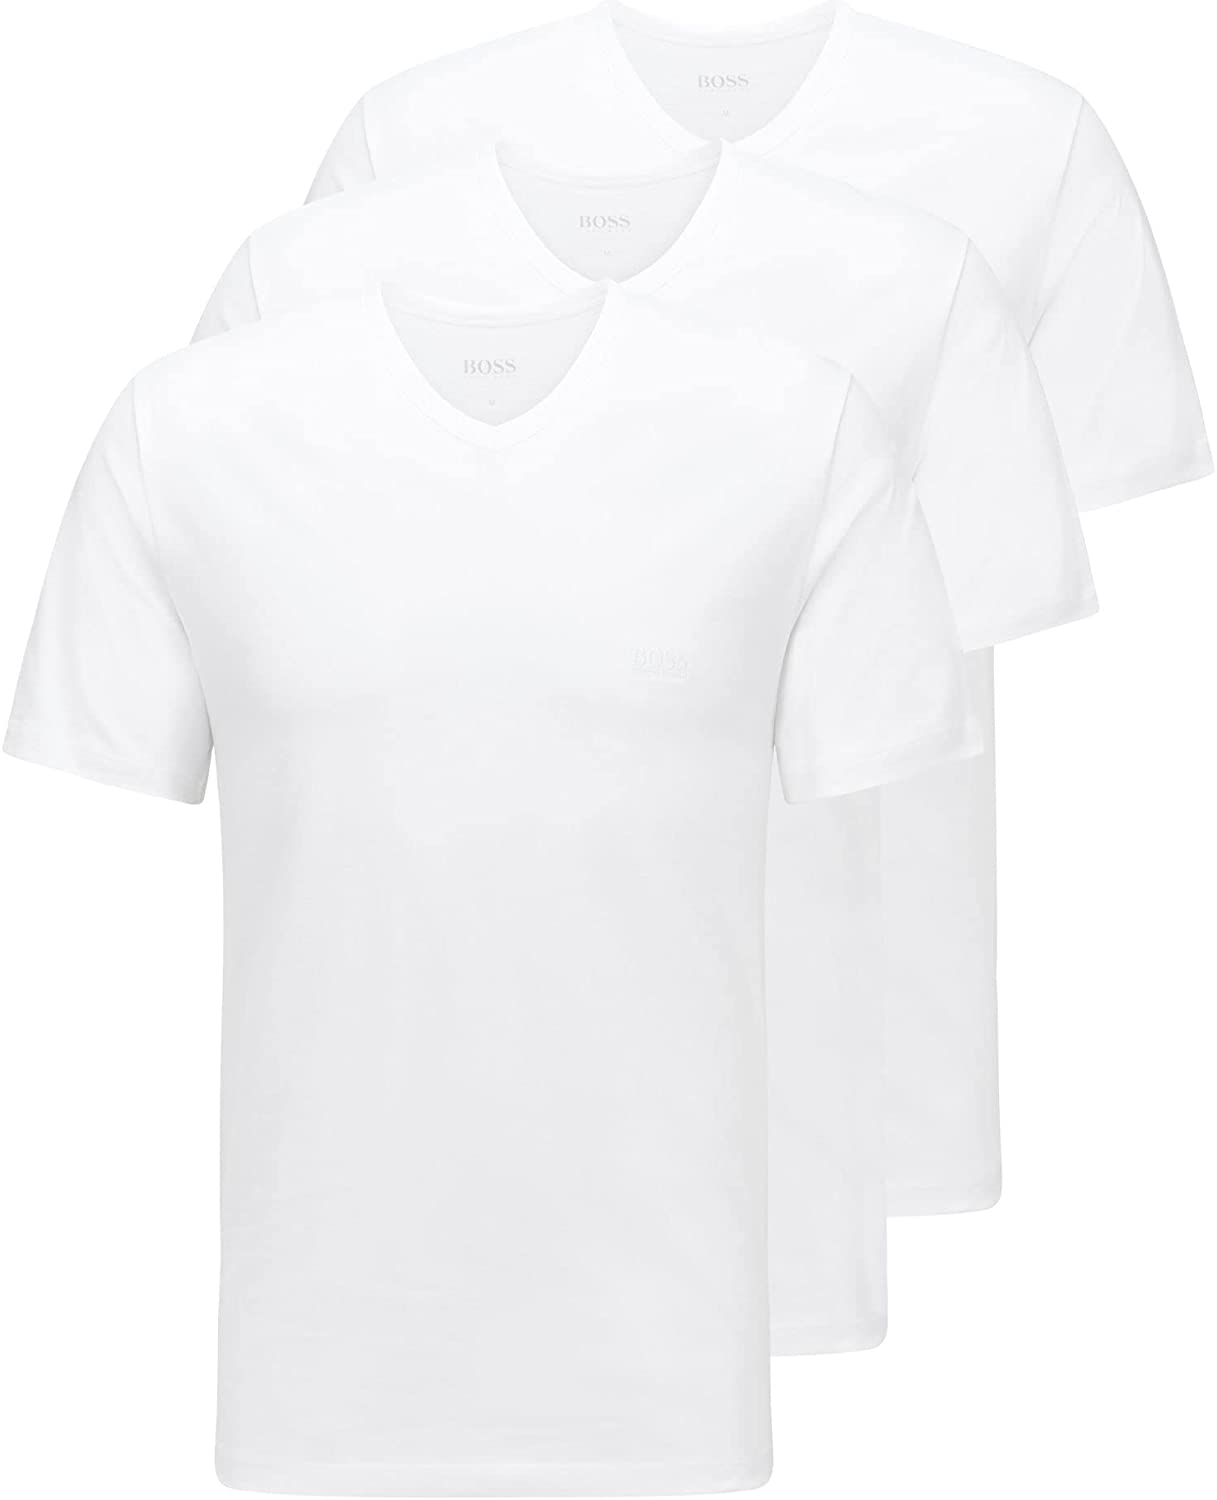 Bild zu [beendet] 3er Pack Hugo Boss Herren T-Shirts mit V-Ausschnitt für 19,99€ (Vergleich: 34,91€)